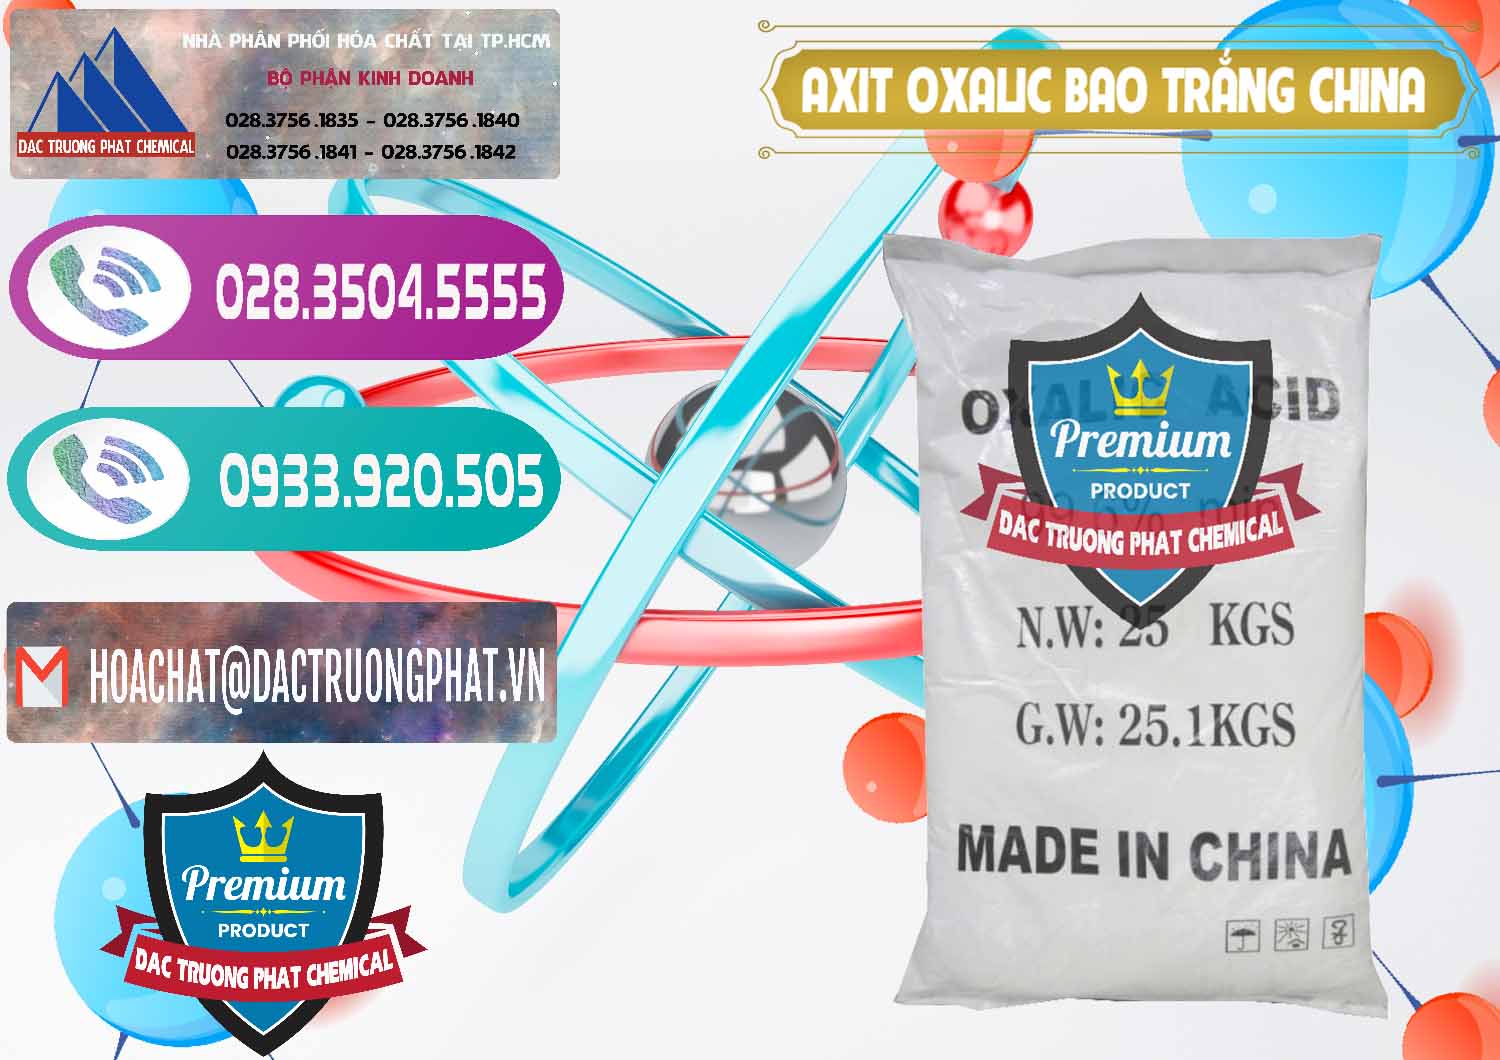 Nơi cung ứng - bán Acid Oxalic – Axit Oxalic 99.6% Bao Trắng Trung Quốc China - 0270 - Đơn vị chuyên bán _ cung cấp hóa chất tại TP.HCM - hoachatxulynuoc.com